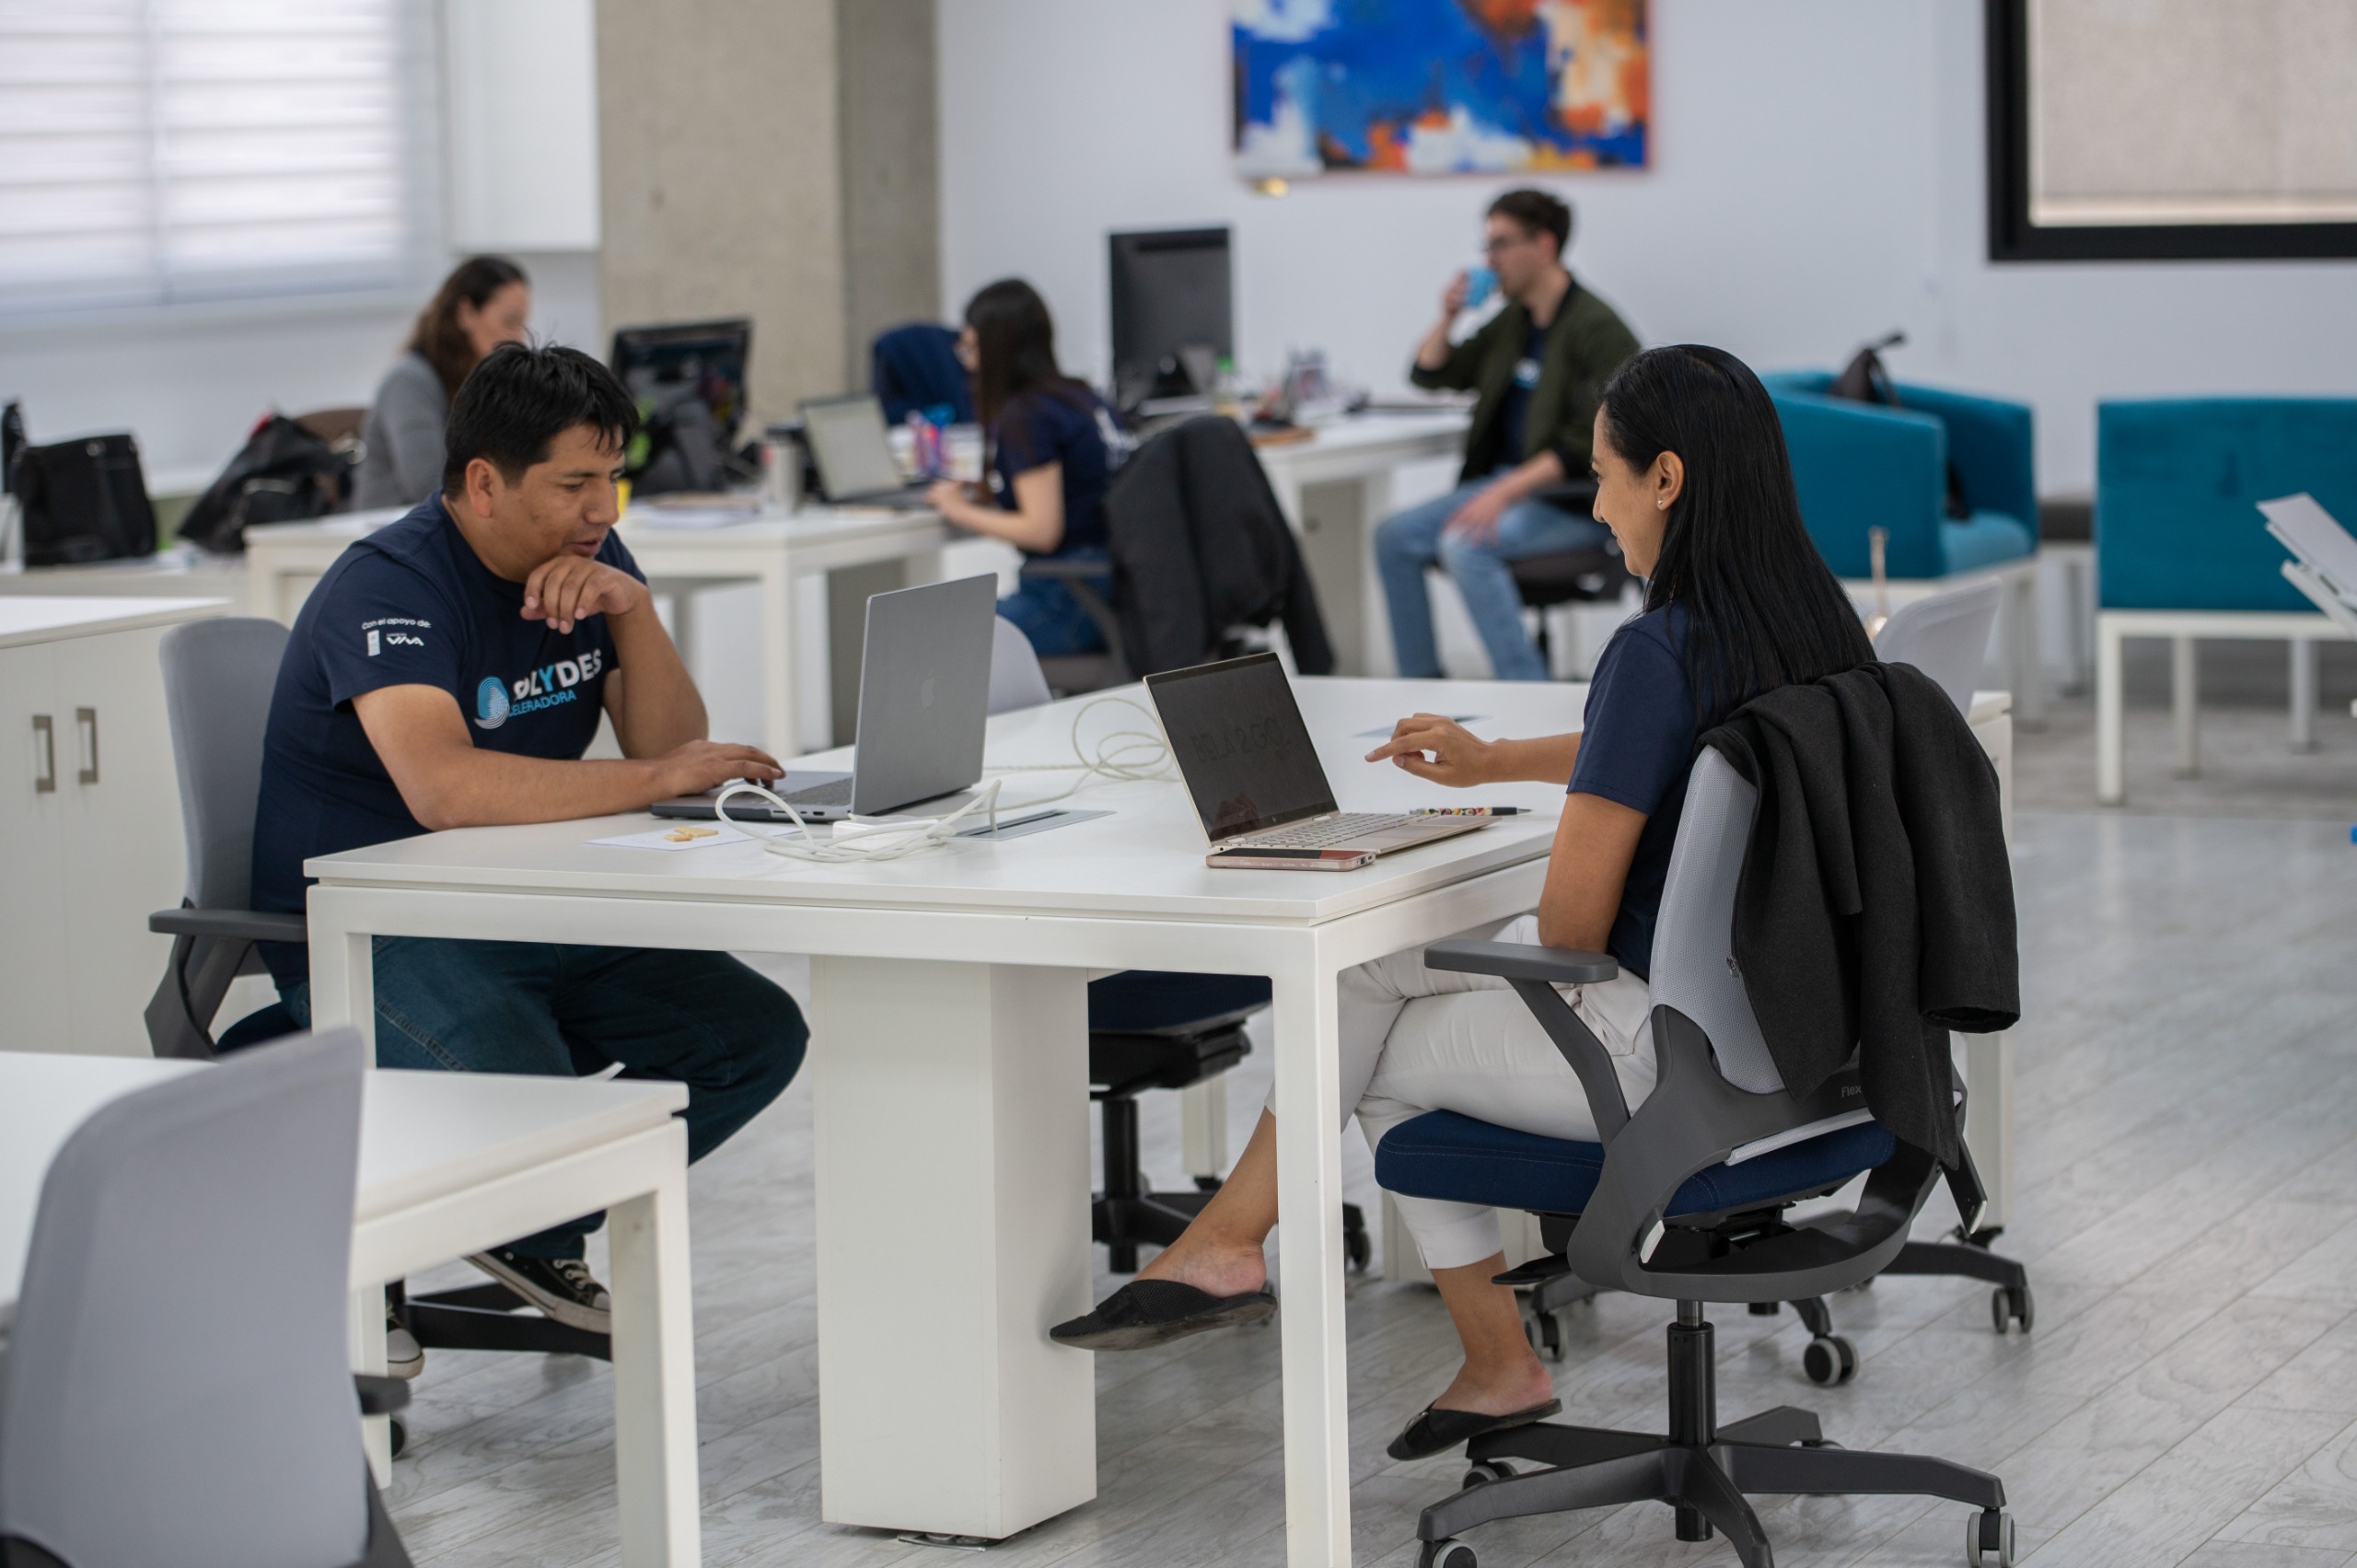 Solydes busca startups en Santa Cruz que quieran acelerar su crecimiento y postular a una inversión de hasta 70.000 dólares